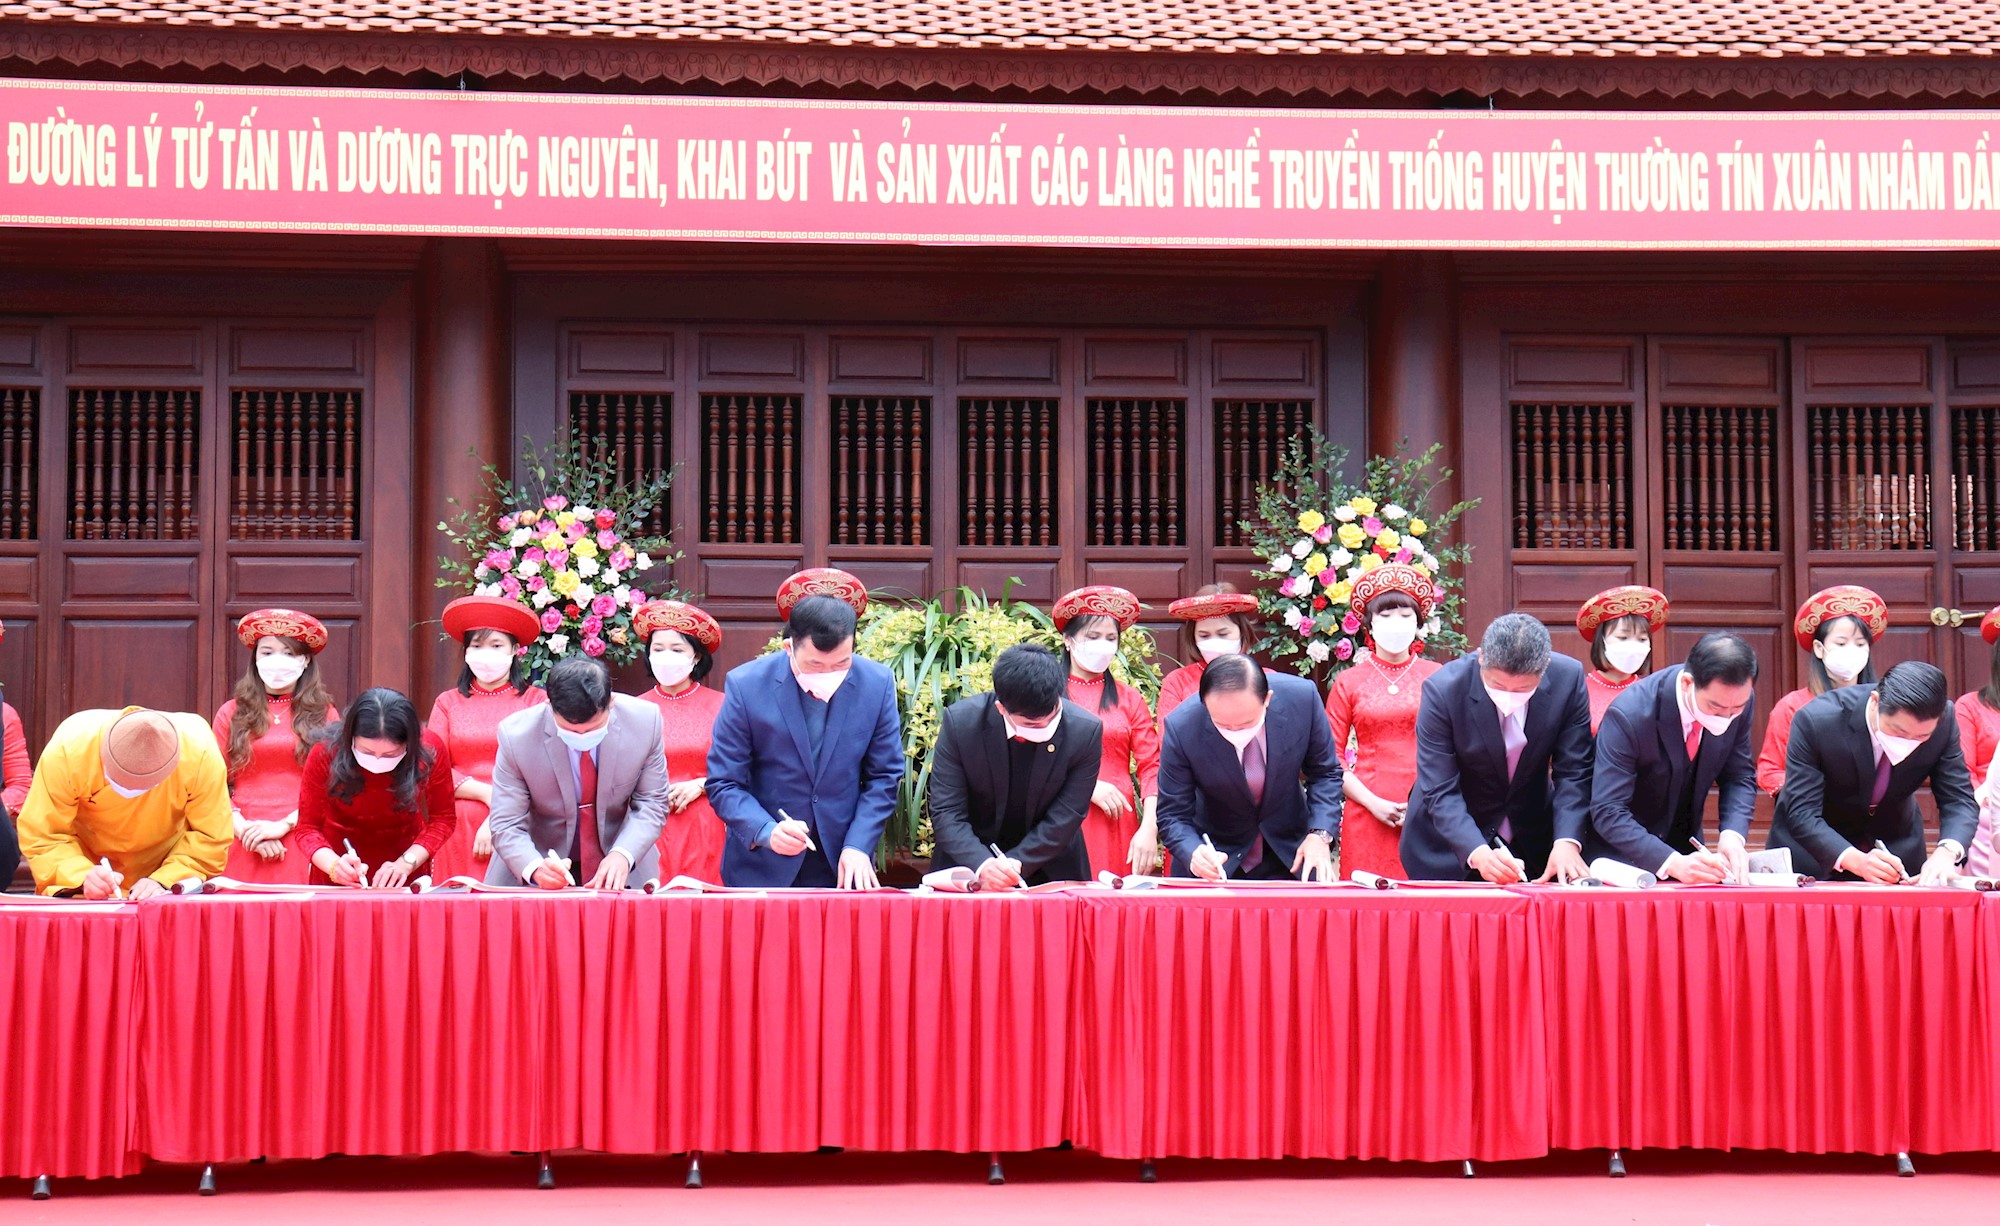 Lãnh đạo thành phố Hà Nội dự lễ khai bút và tôn vinh sản xuất các làng nghề truyền thống Thường Tín